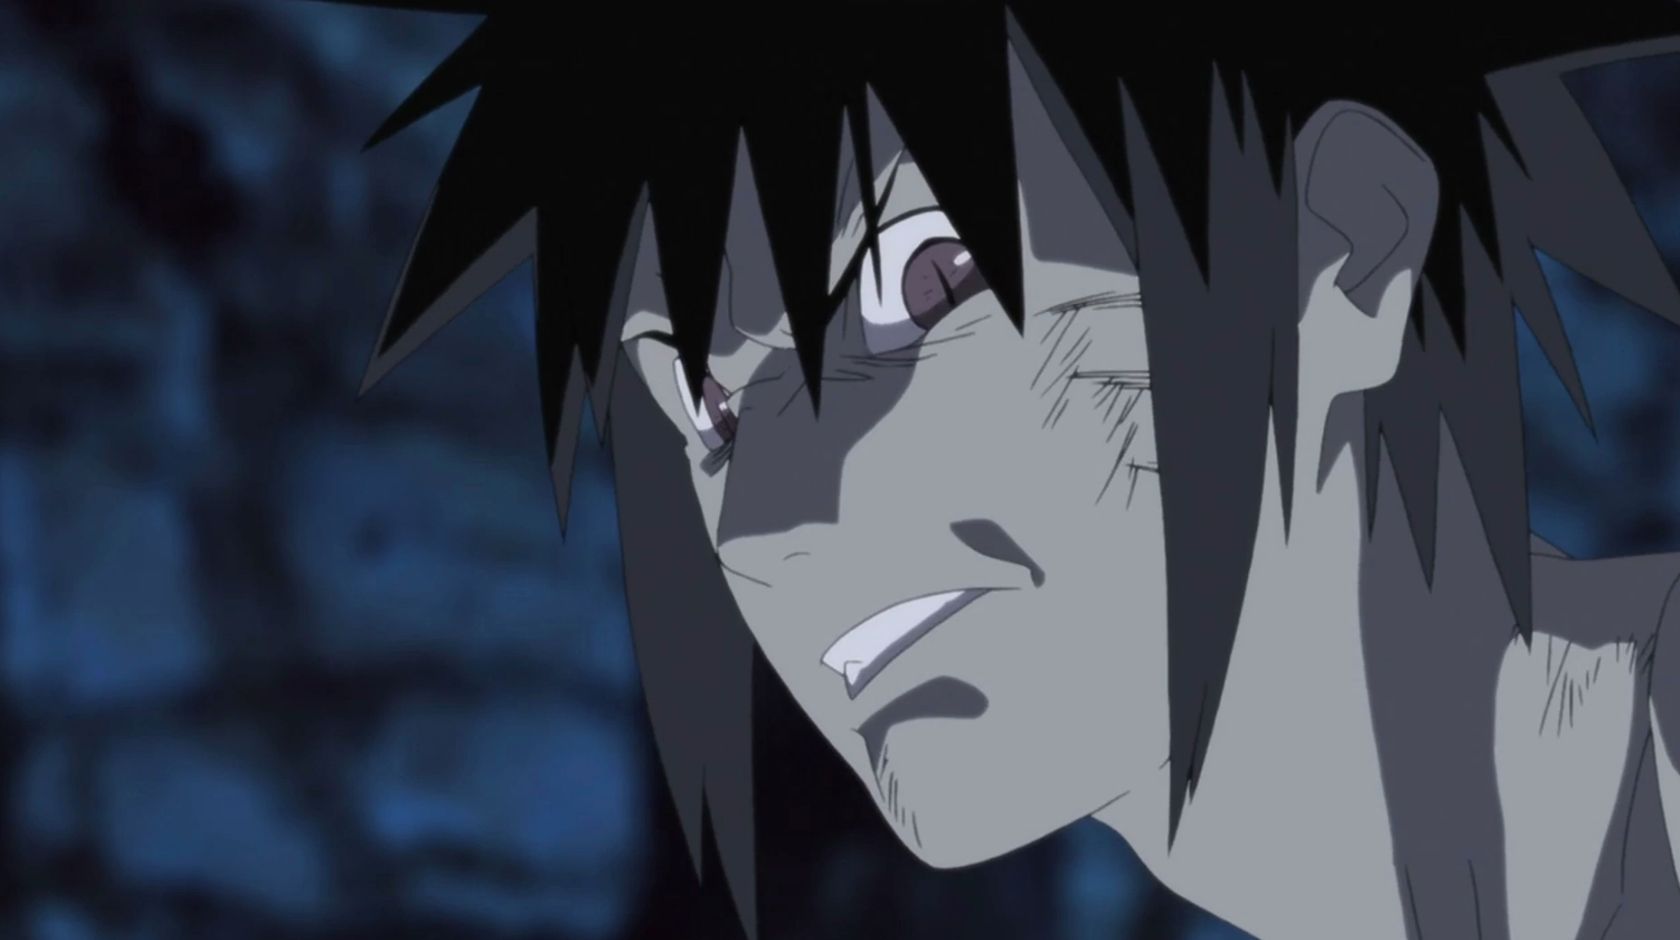 Menma em Naruto the Movie Road to Ninja franzindo a testa contra um fundo escuro.